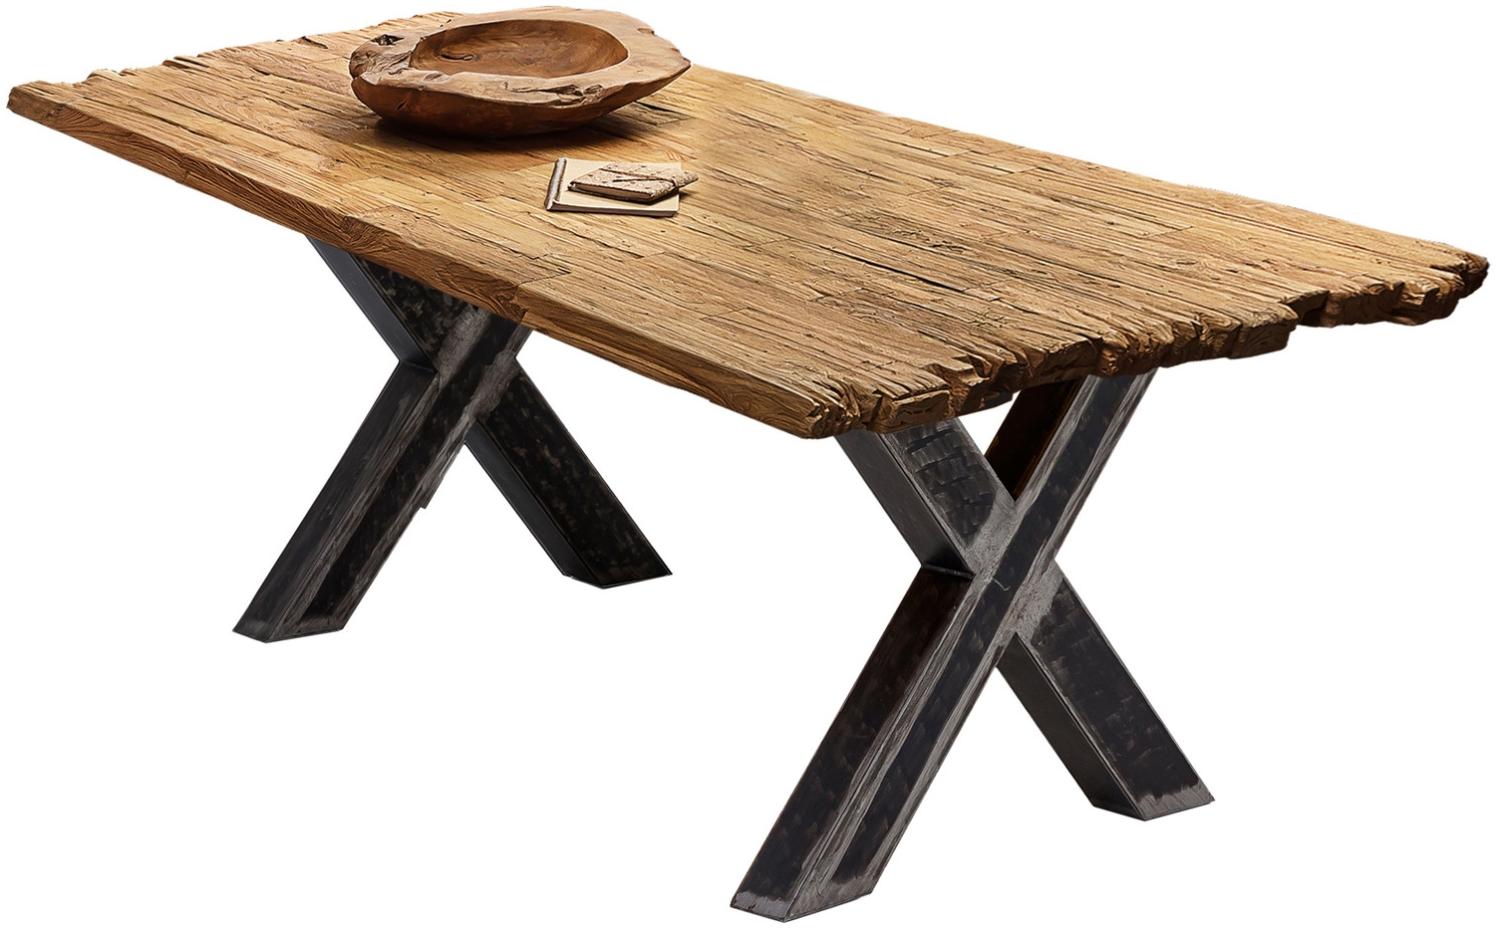 Sit Möbel Tische & Bänke Tisch 160x90 cm, Platte recyceltes Teak natur, X-Gestell Metall used look, klar lackiert Bild 1